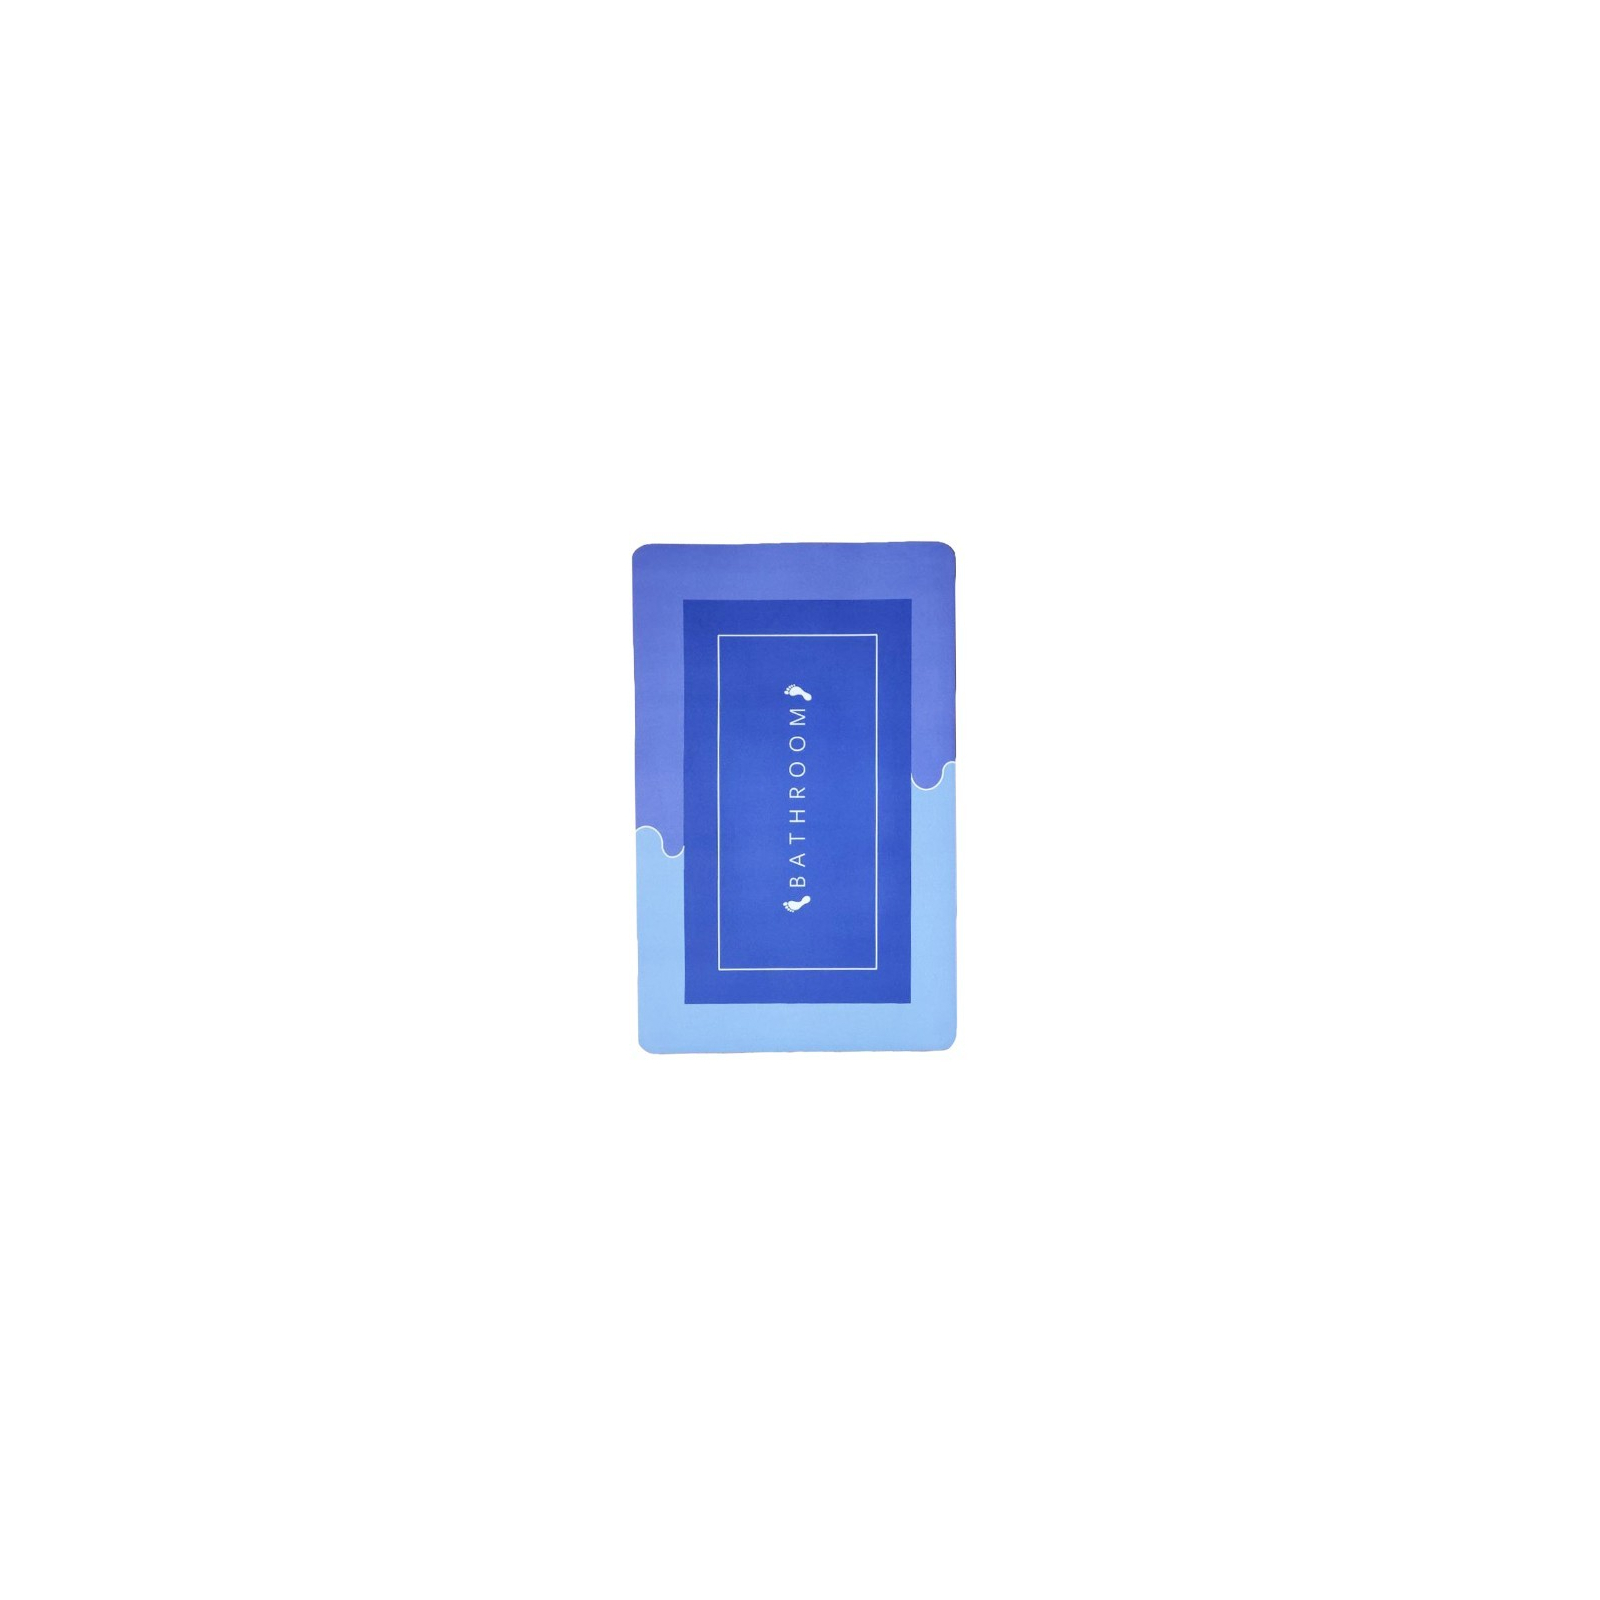 Коврик для ванной Stenson суперпоглощающий 40 х 60 см прямоугольный фиолетово-голубой (R30937 violet-blue) изображение 2